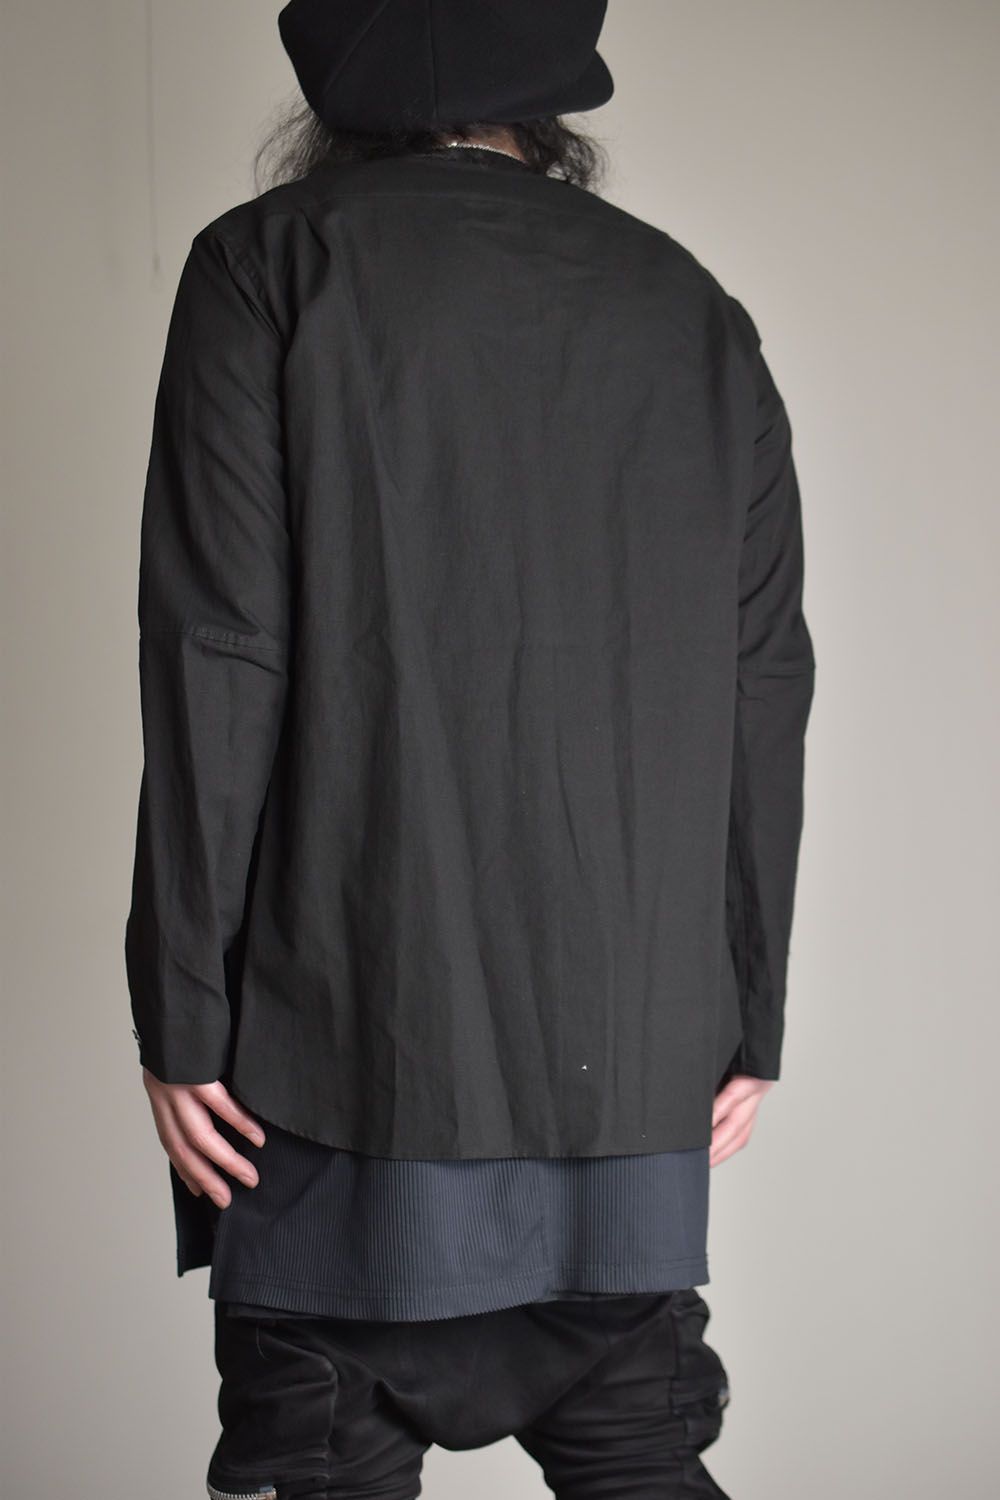 Cotton Linen V neck Shirt""Black"/コットンリネンVネックシャツ"ブラック"